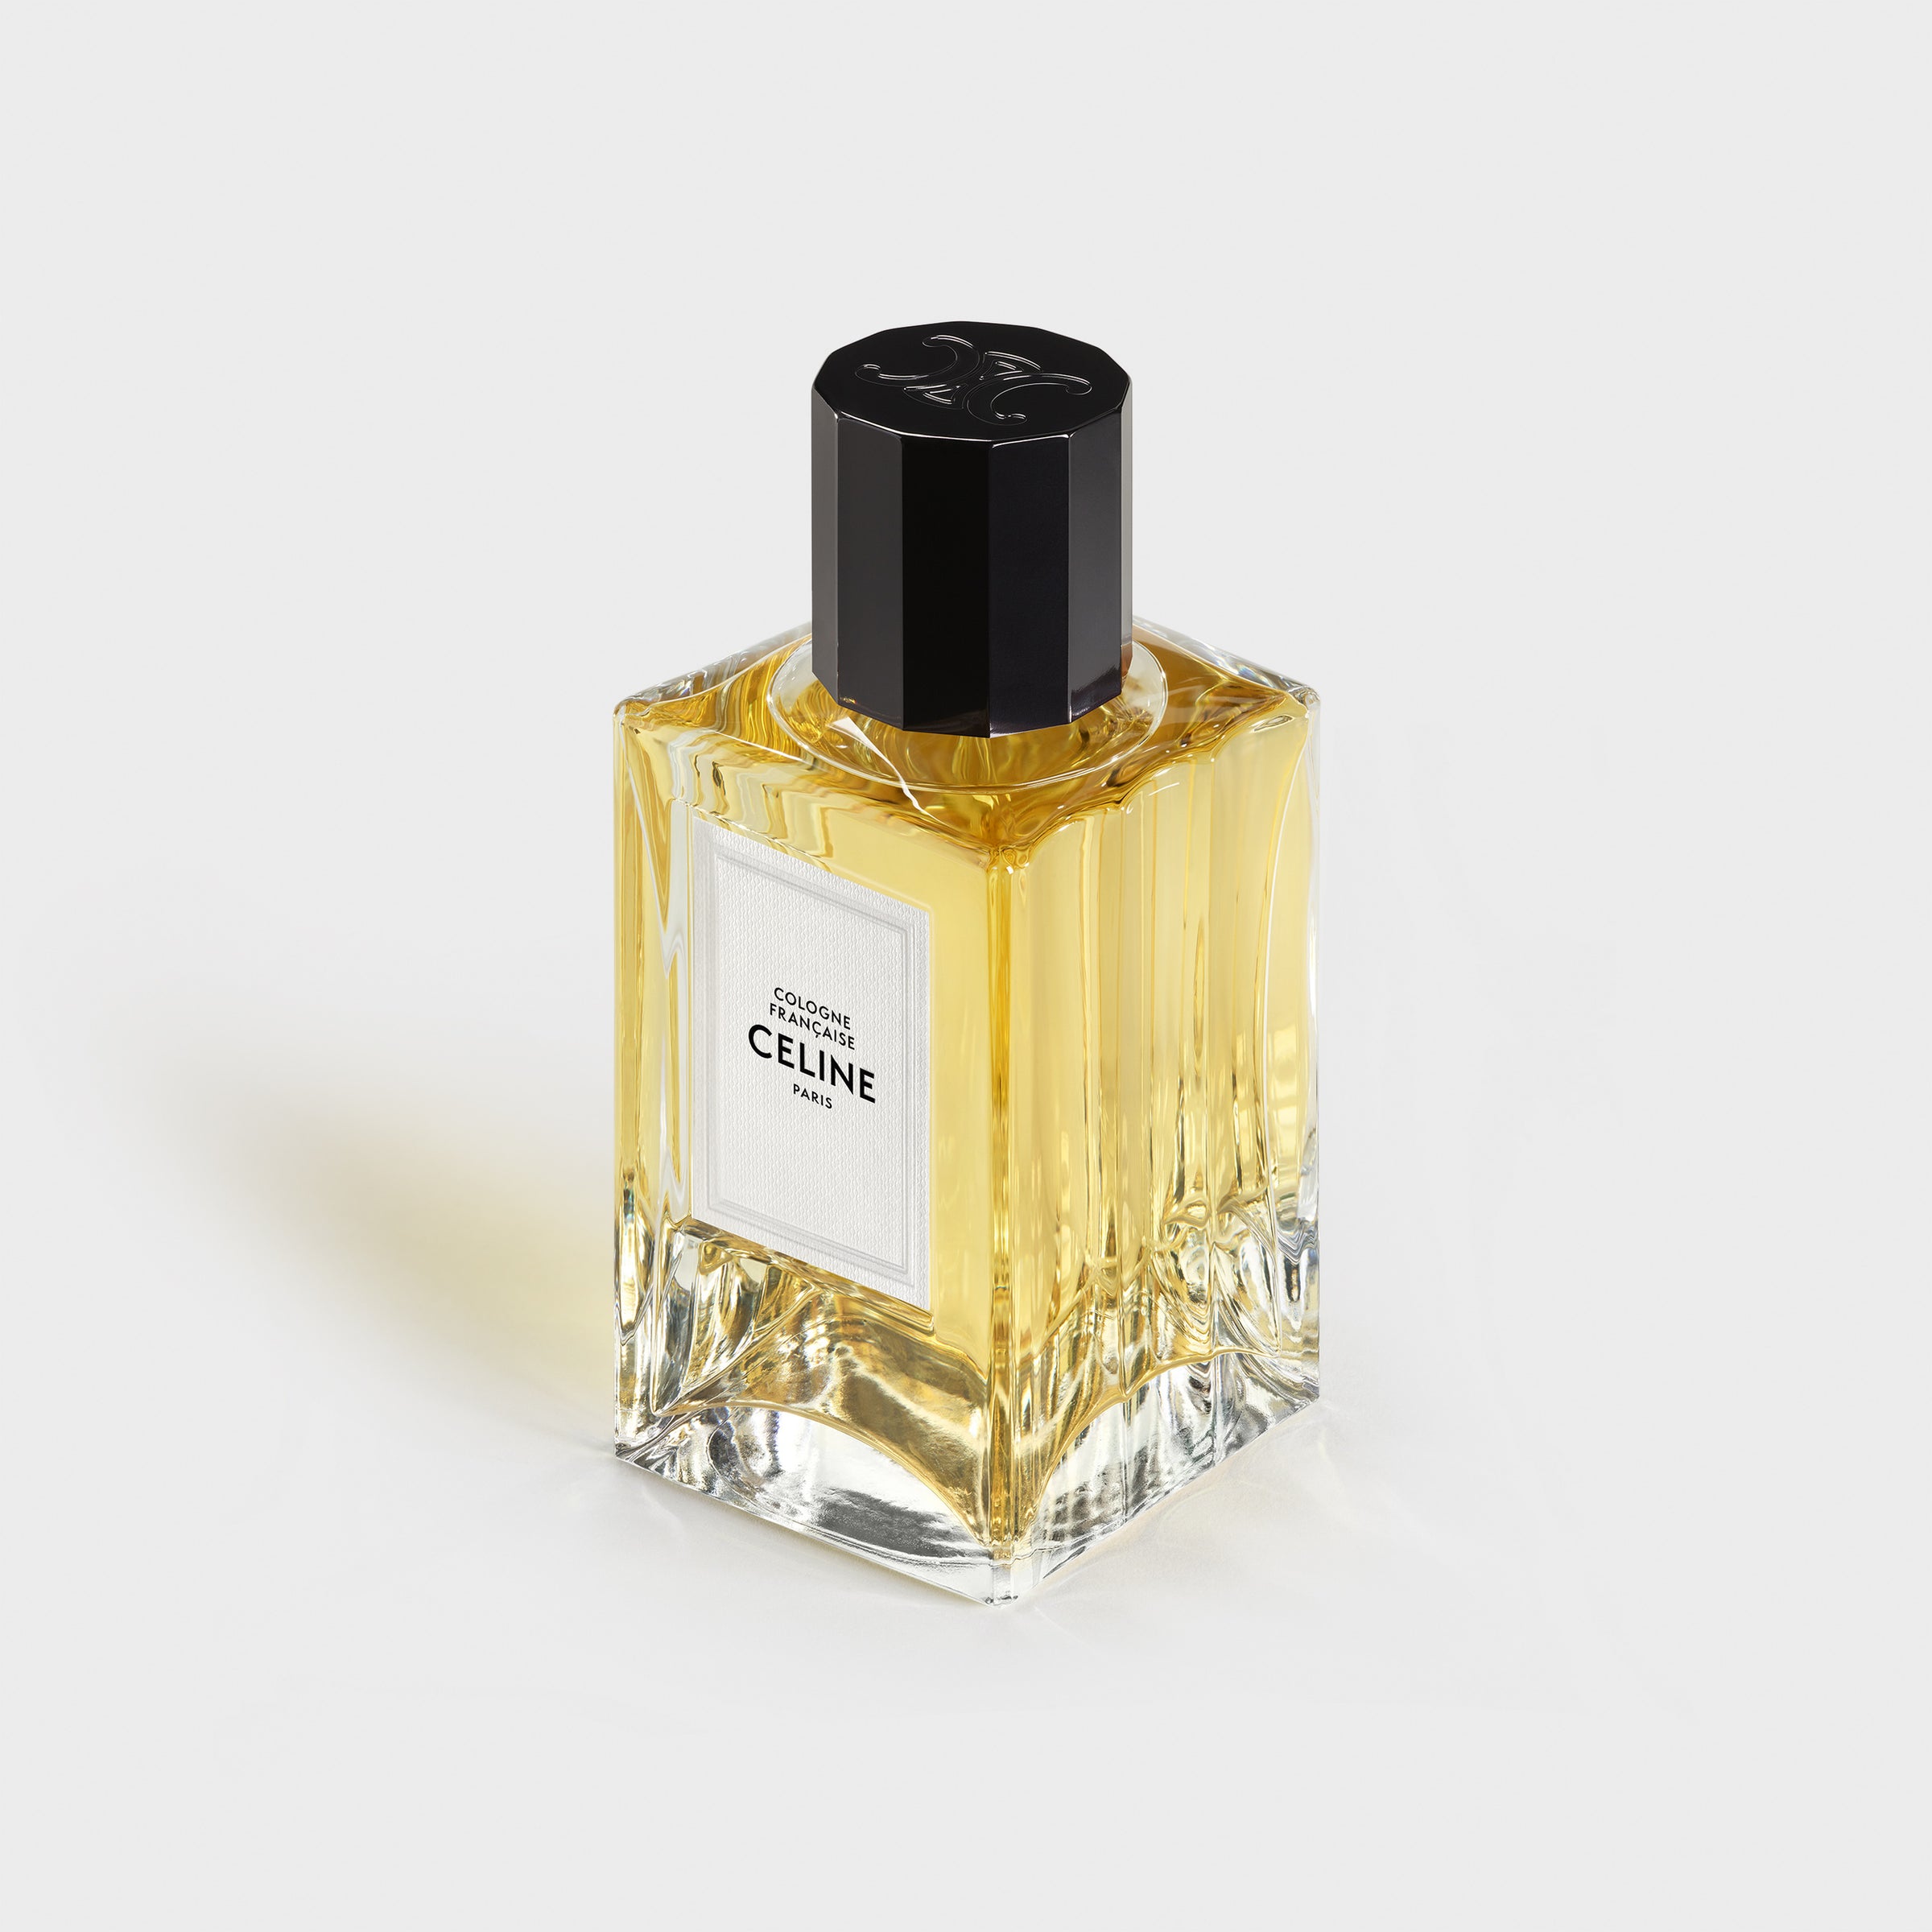 Nước Hoa CELINE Cologne Française Eau De Parfum #200 mL